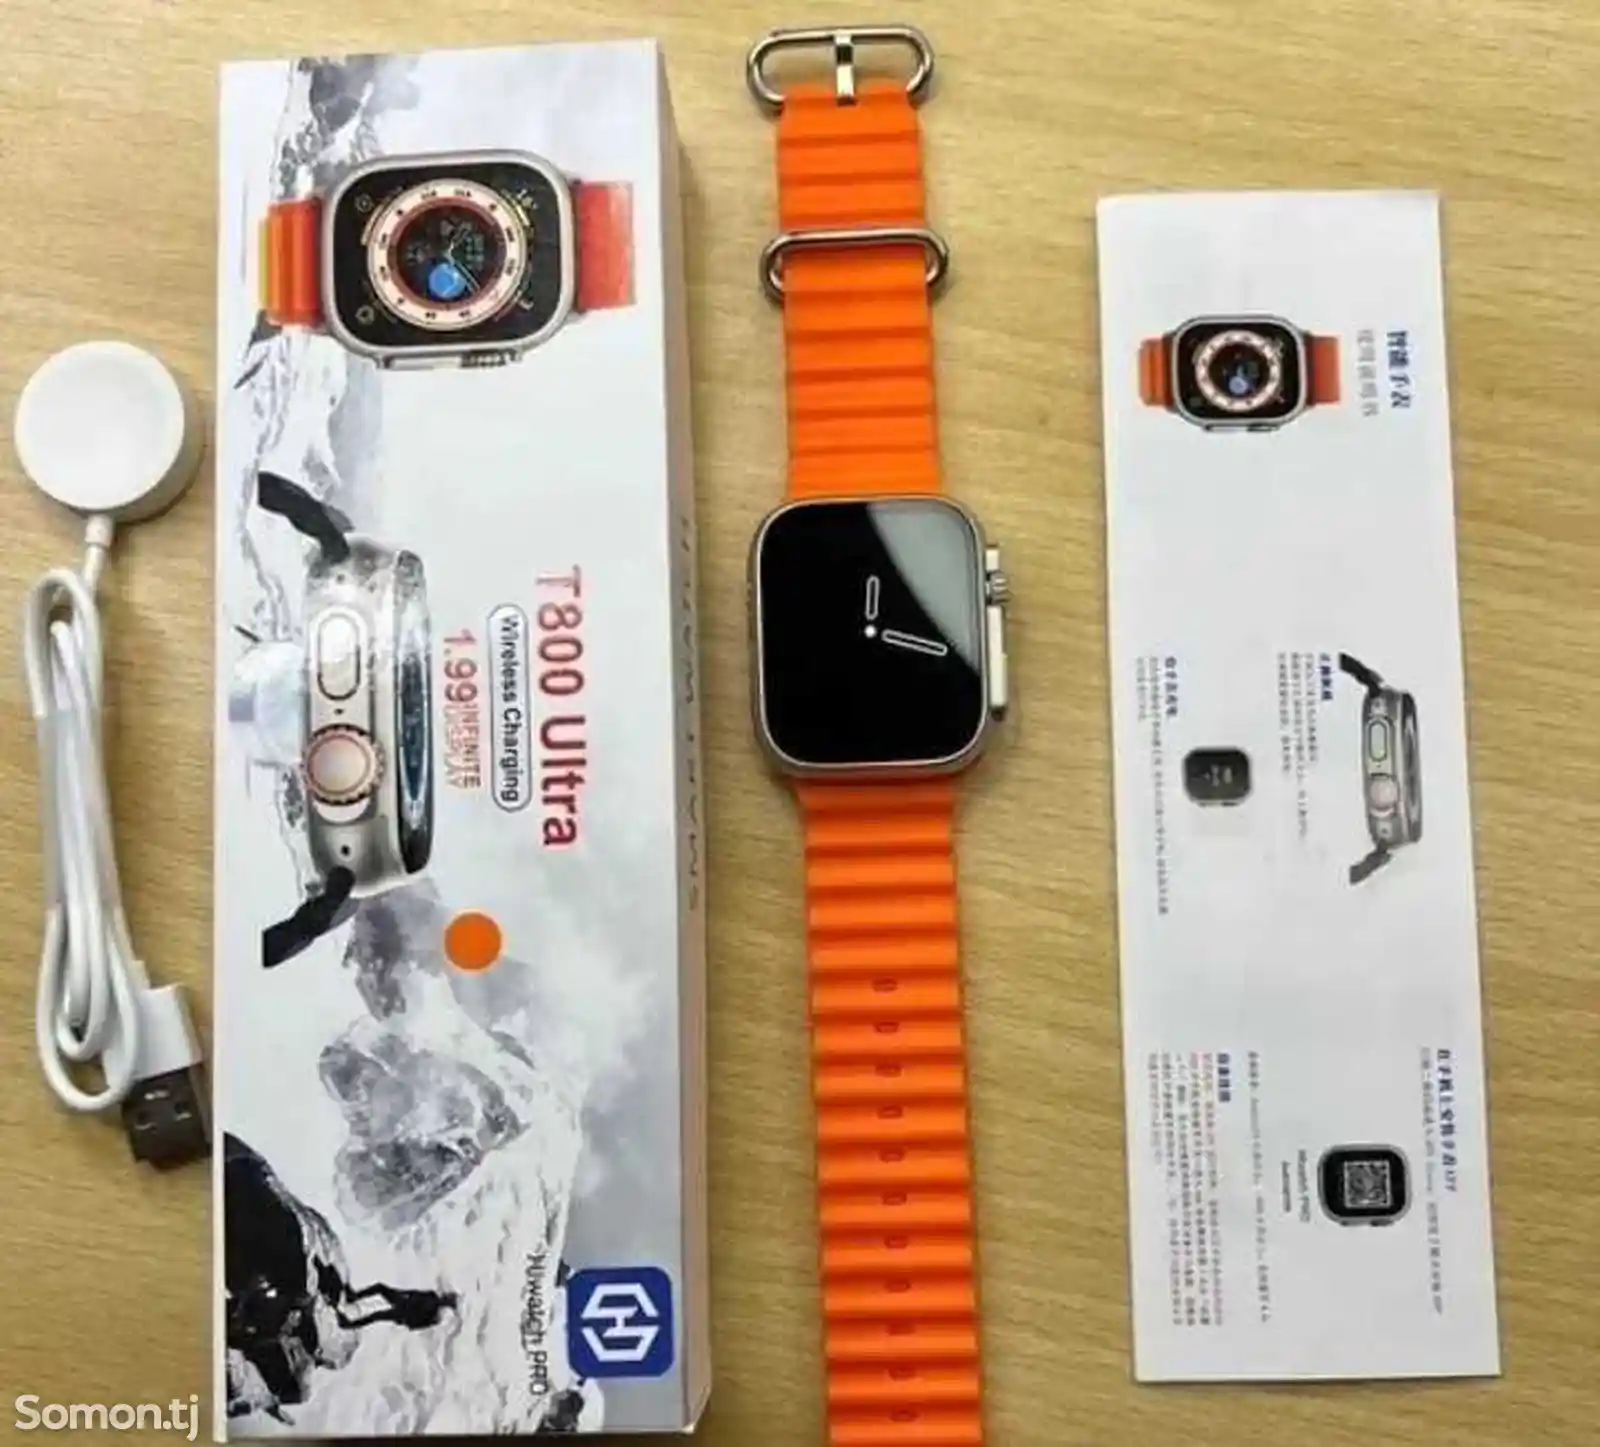 Cмарт часы Smart watch T800 ultra